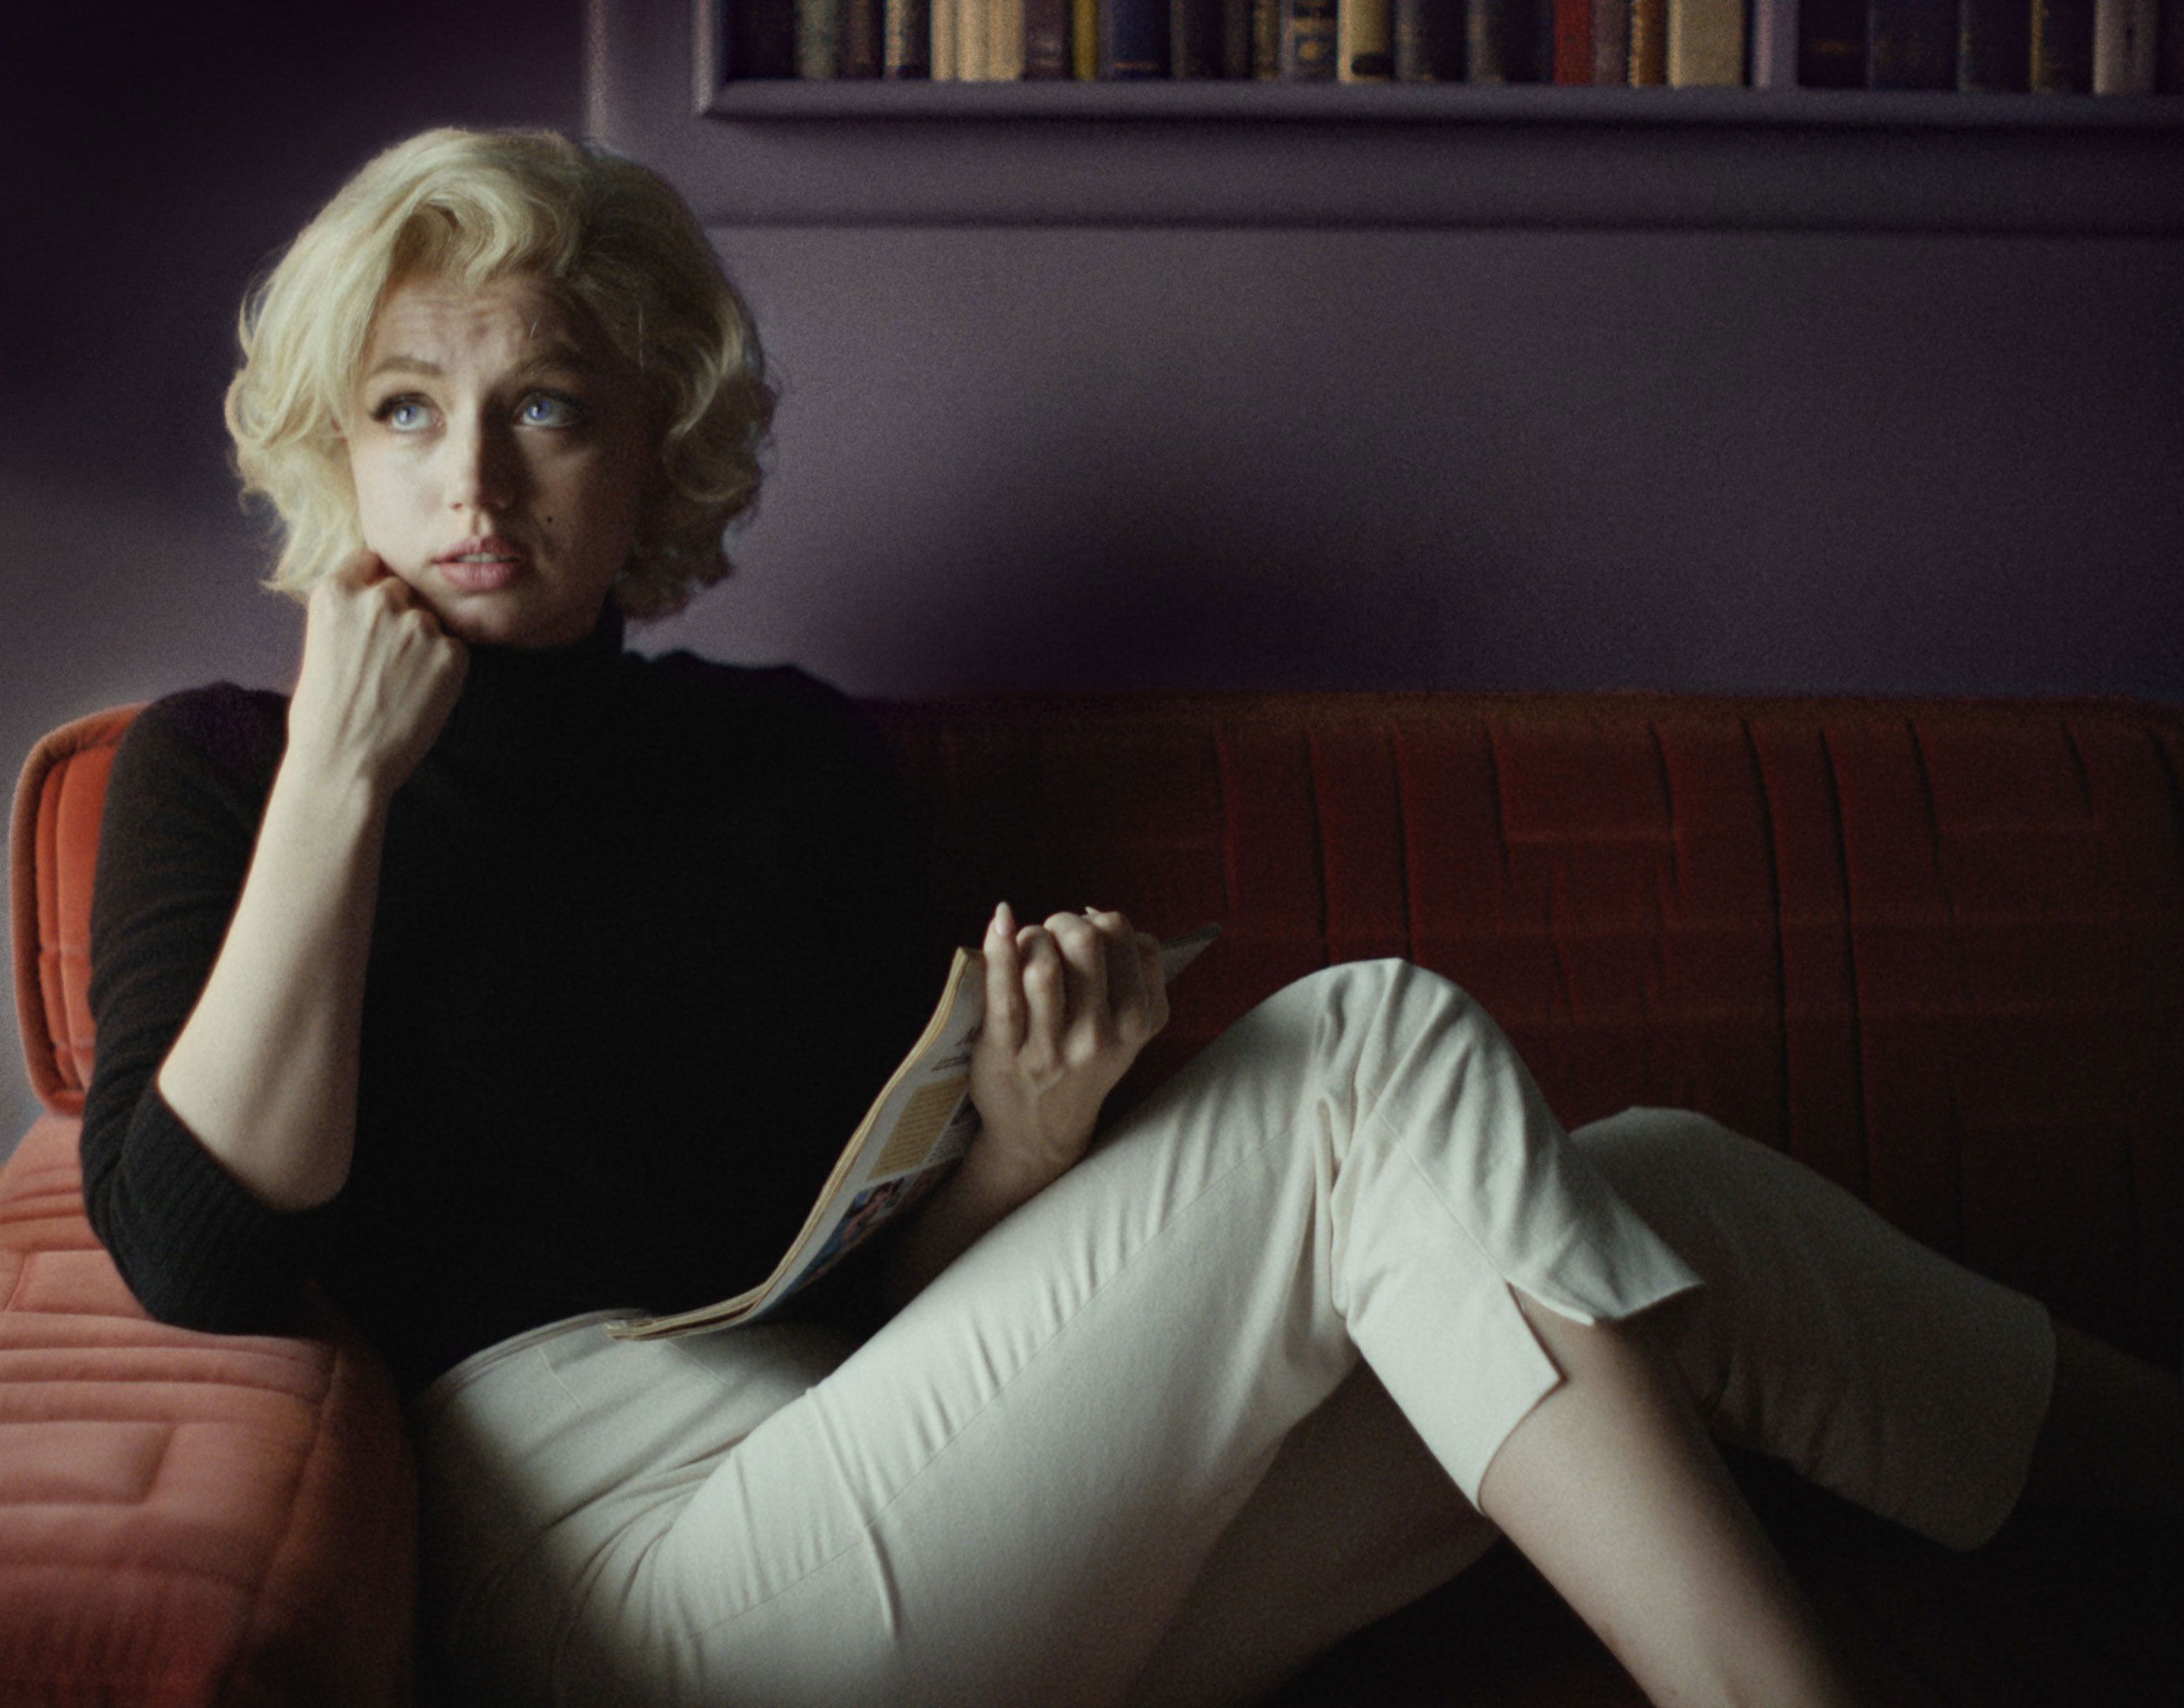 A Psychic Talks Blonde, de Armas, Marilyn Monroe's Ghost